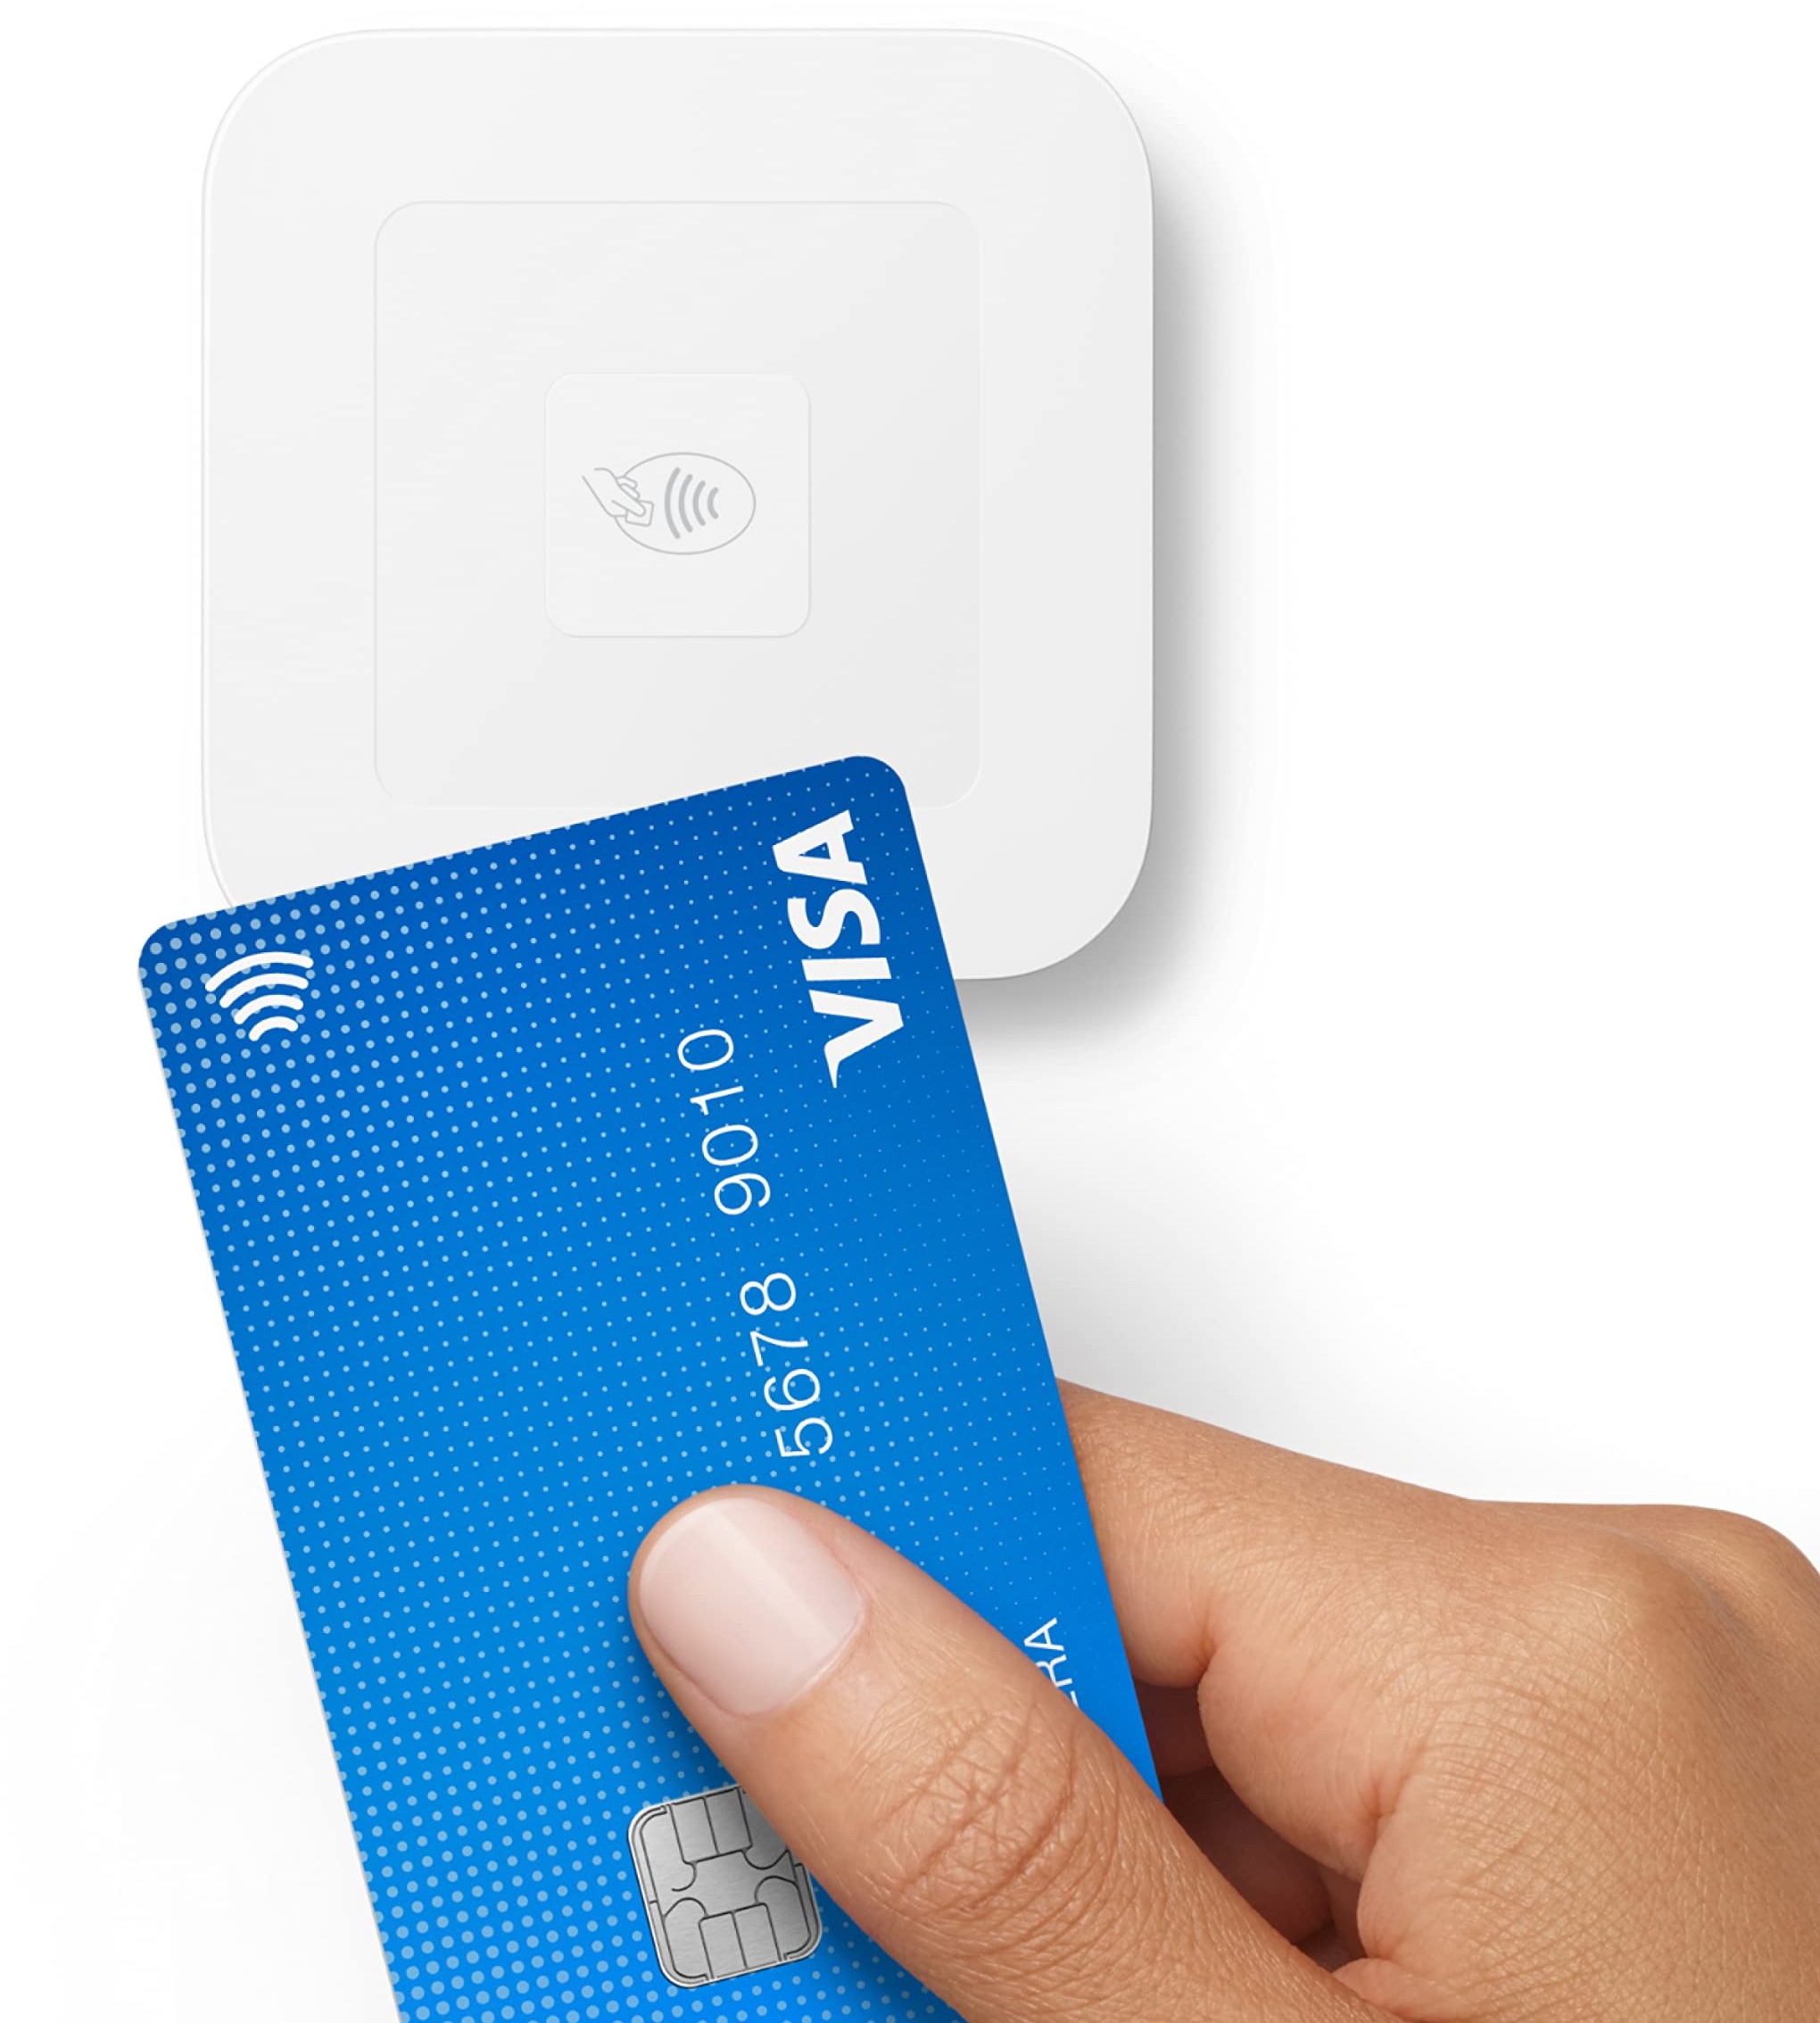 Square Reader (2. Generation) - Akzeptieren Sie kontaktlose und eingefügte Kartenzahlungen unterwegs oder an der Theke